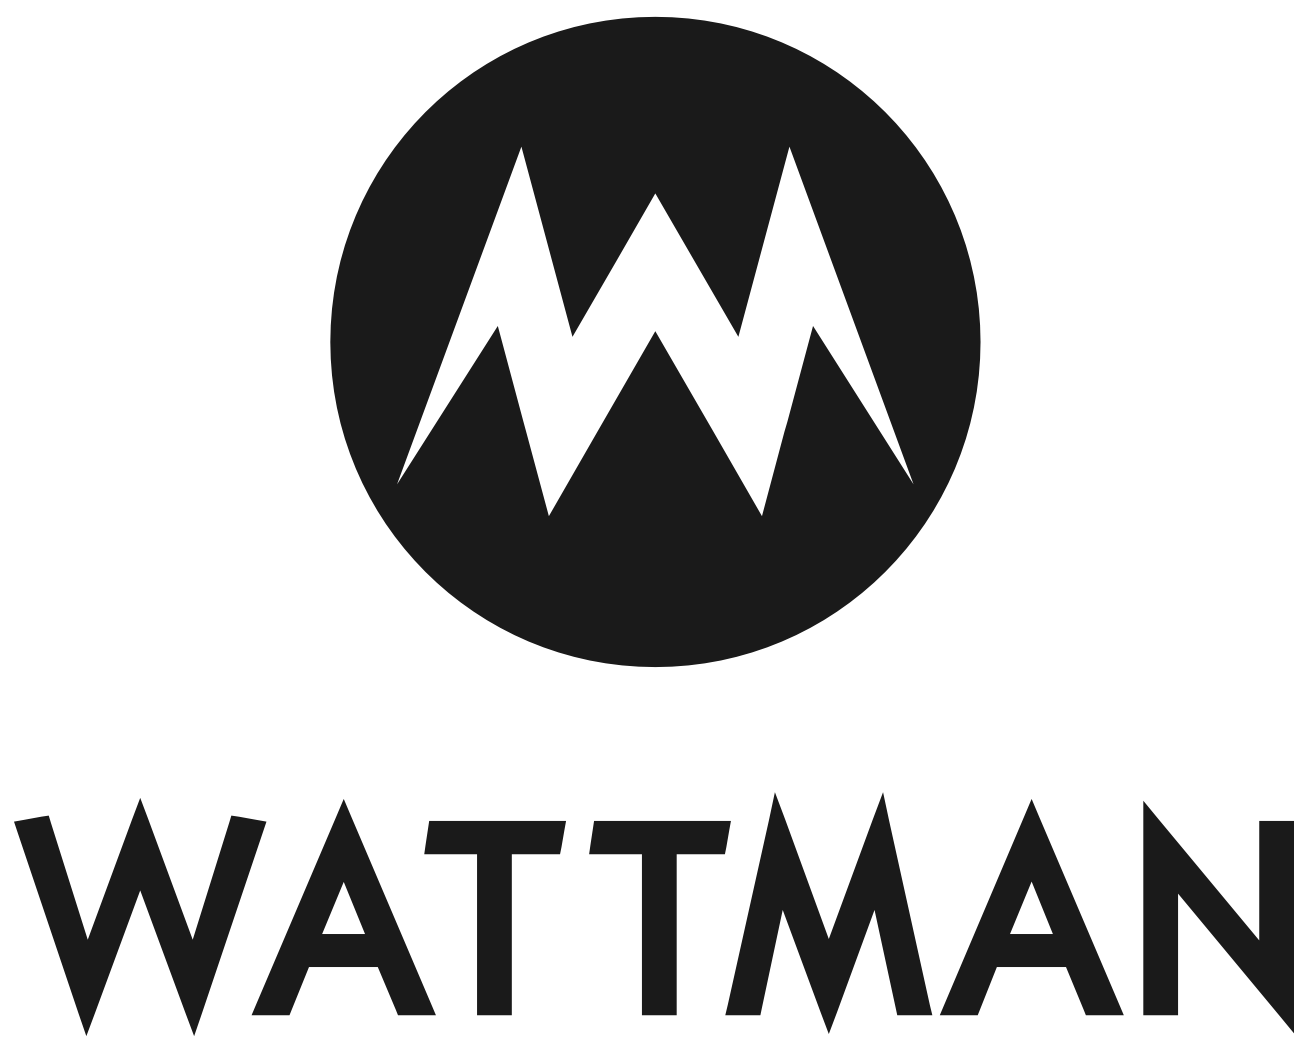 Wattman logo